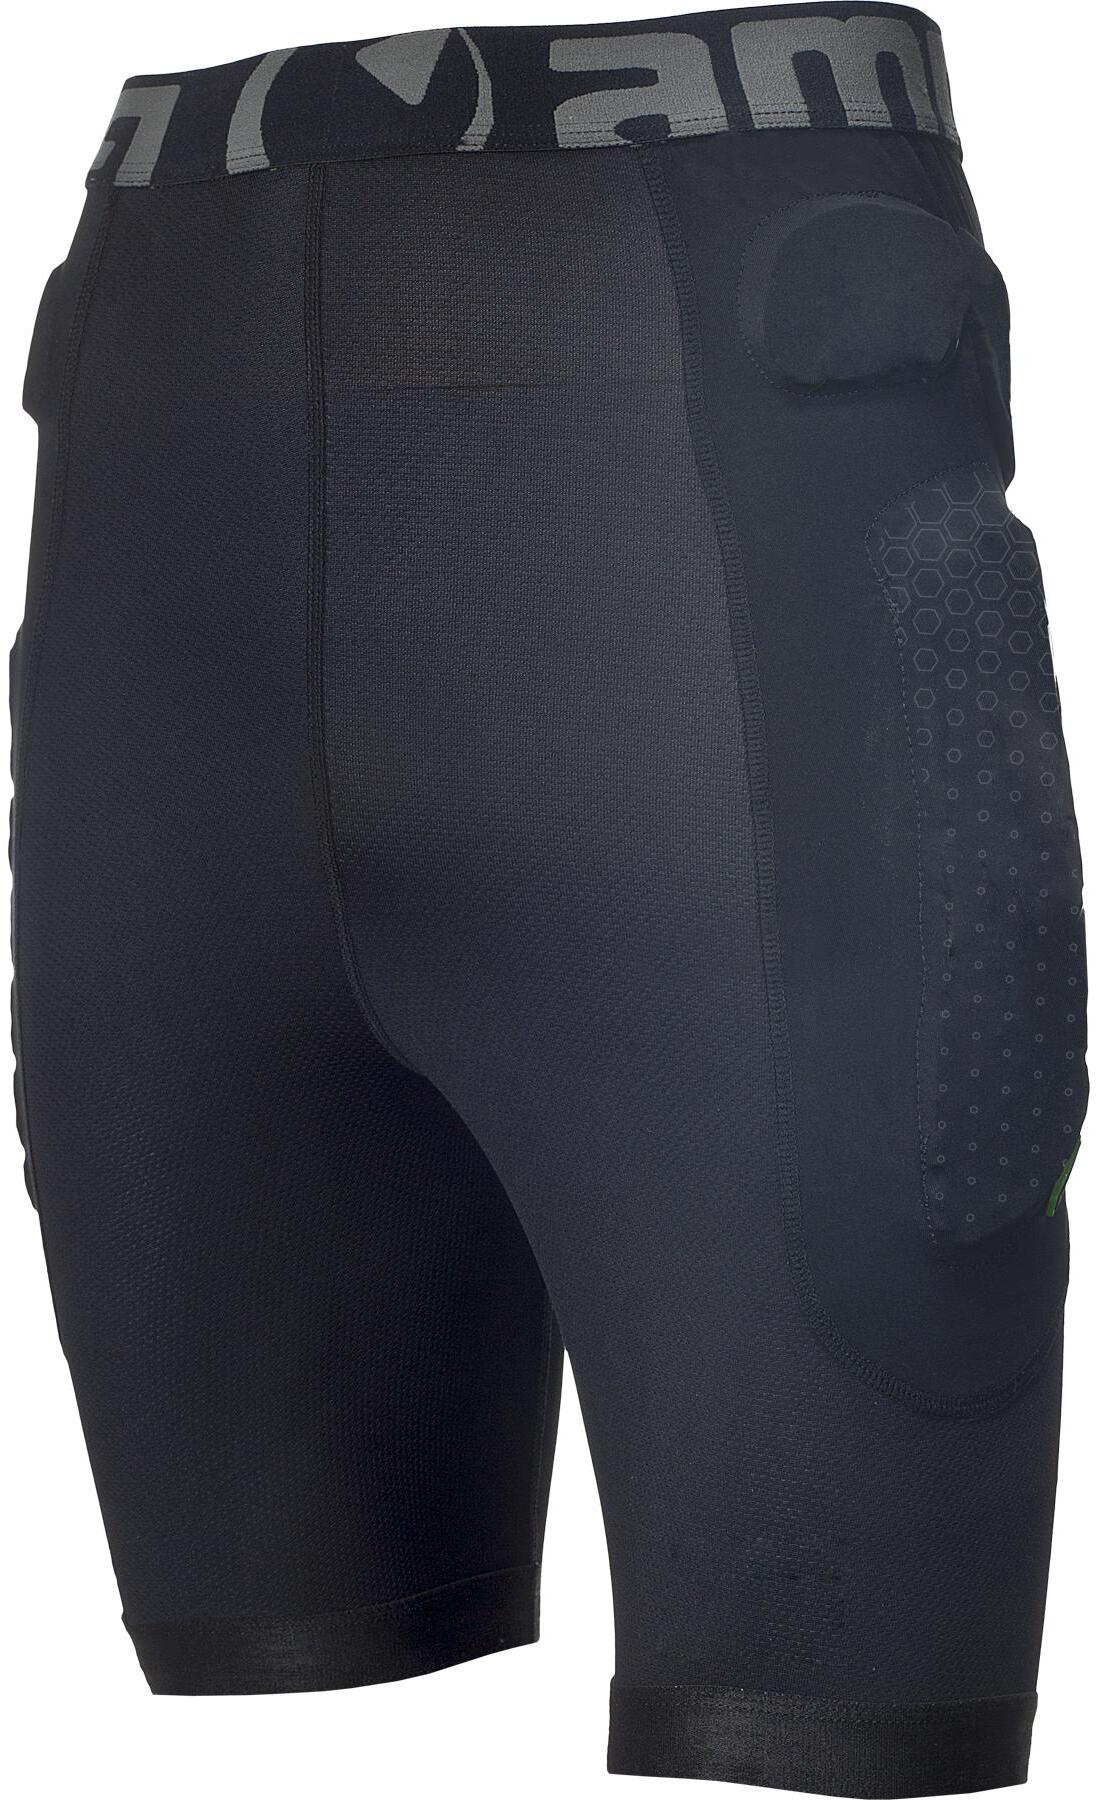 Защитные шорты Amplifi 2020-21 Mkx Pant Black XL